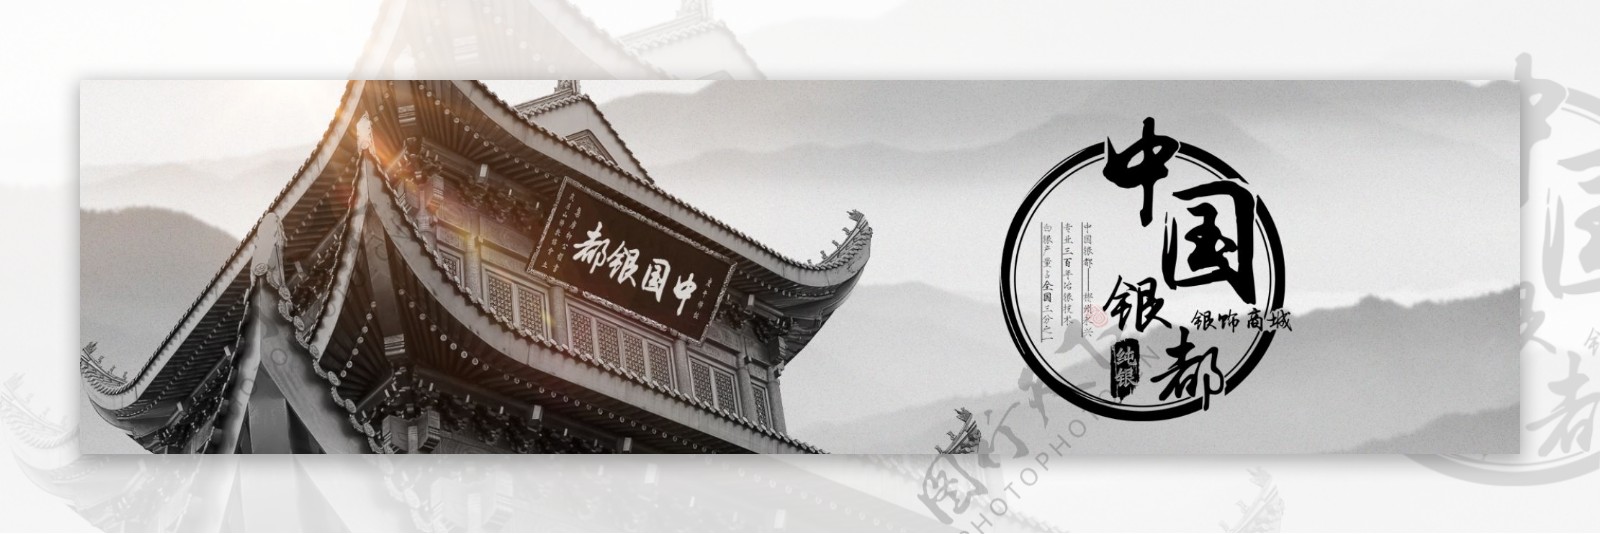 中国风复古房屋LOGO海报古典大气银都